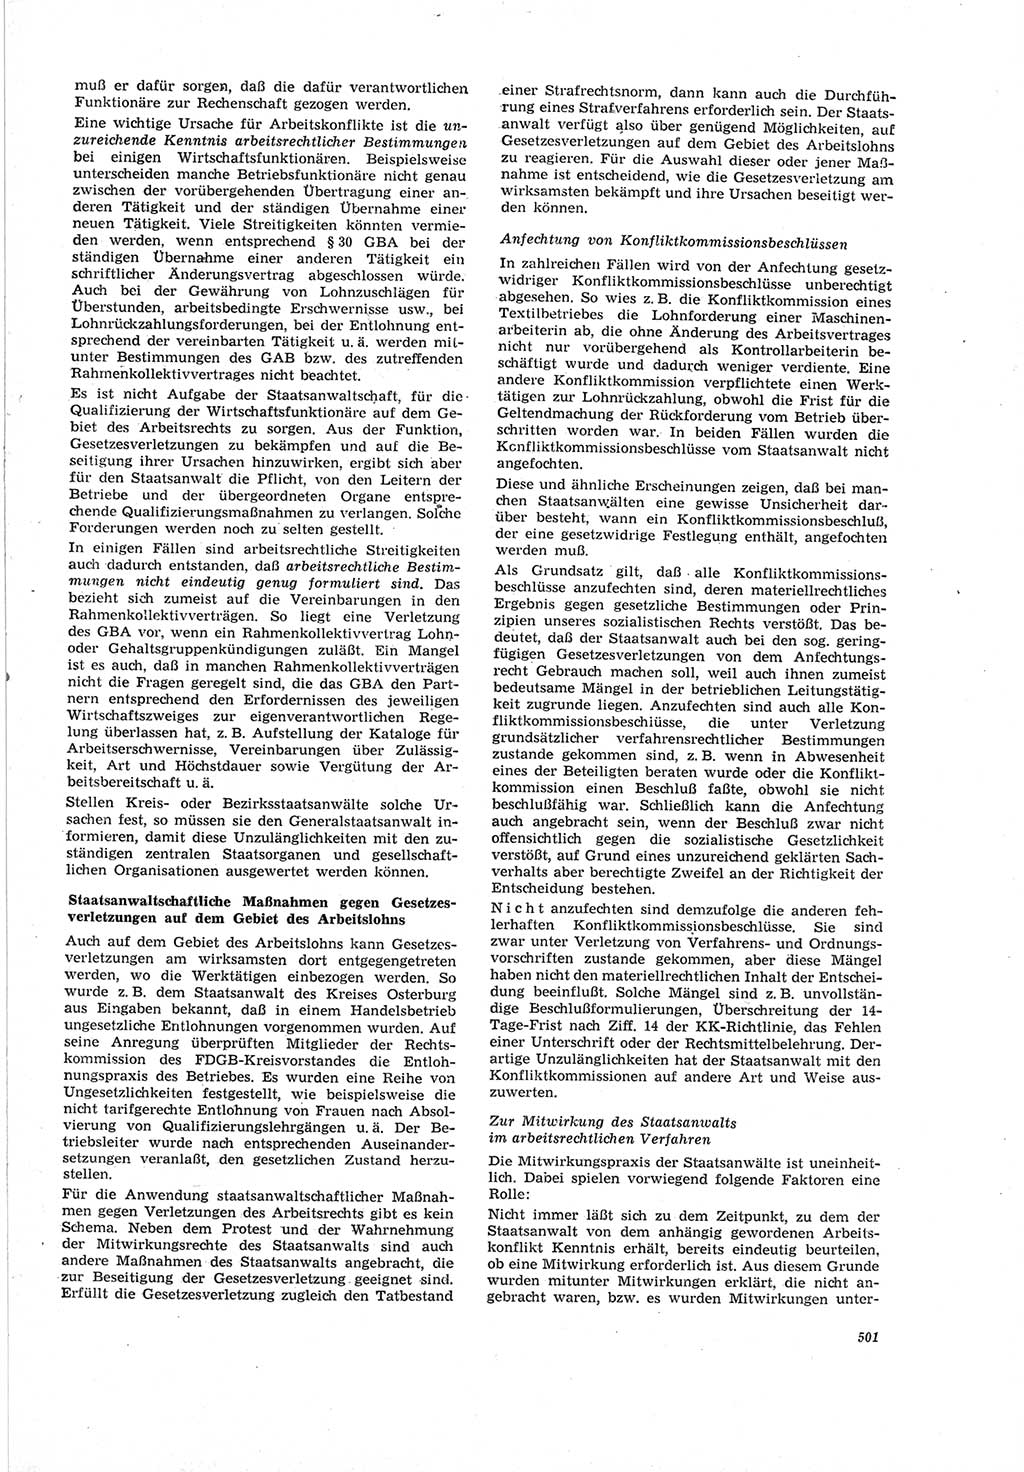 Neue Justiz (NJ), Zeitschrift für Recht und Rechtswissenschaft [Deutsche Demokratische Republik (DDR)], 19. Jahrgang 1965, Seite 501 (NJ DDR 1965, S. 501)